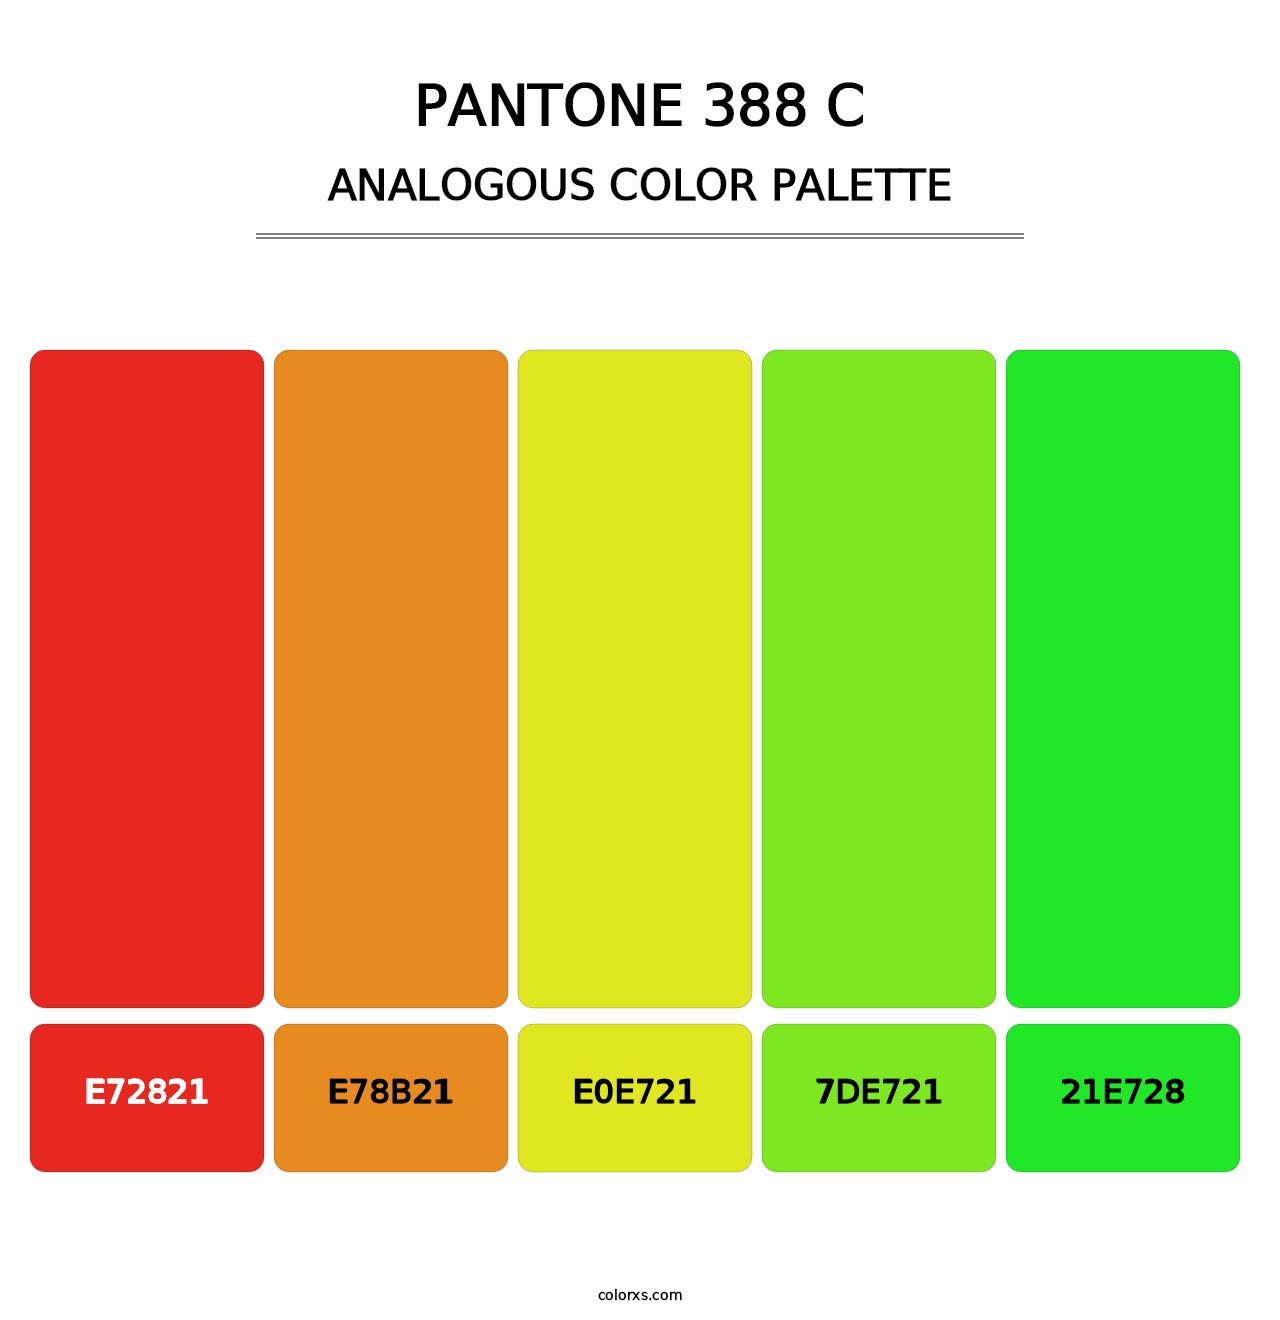 PANTONE 388 C - Analogous Color Palette